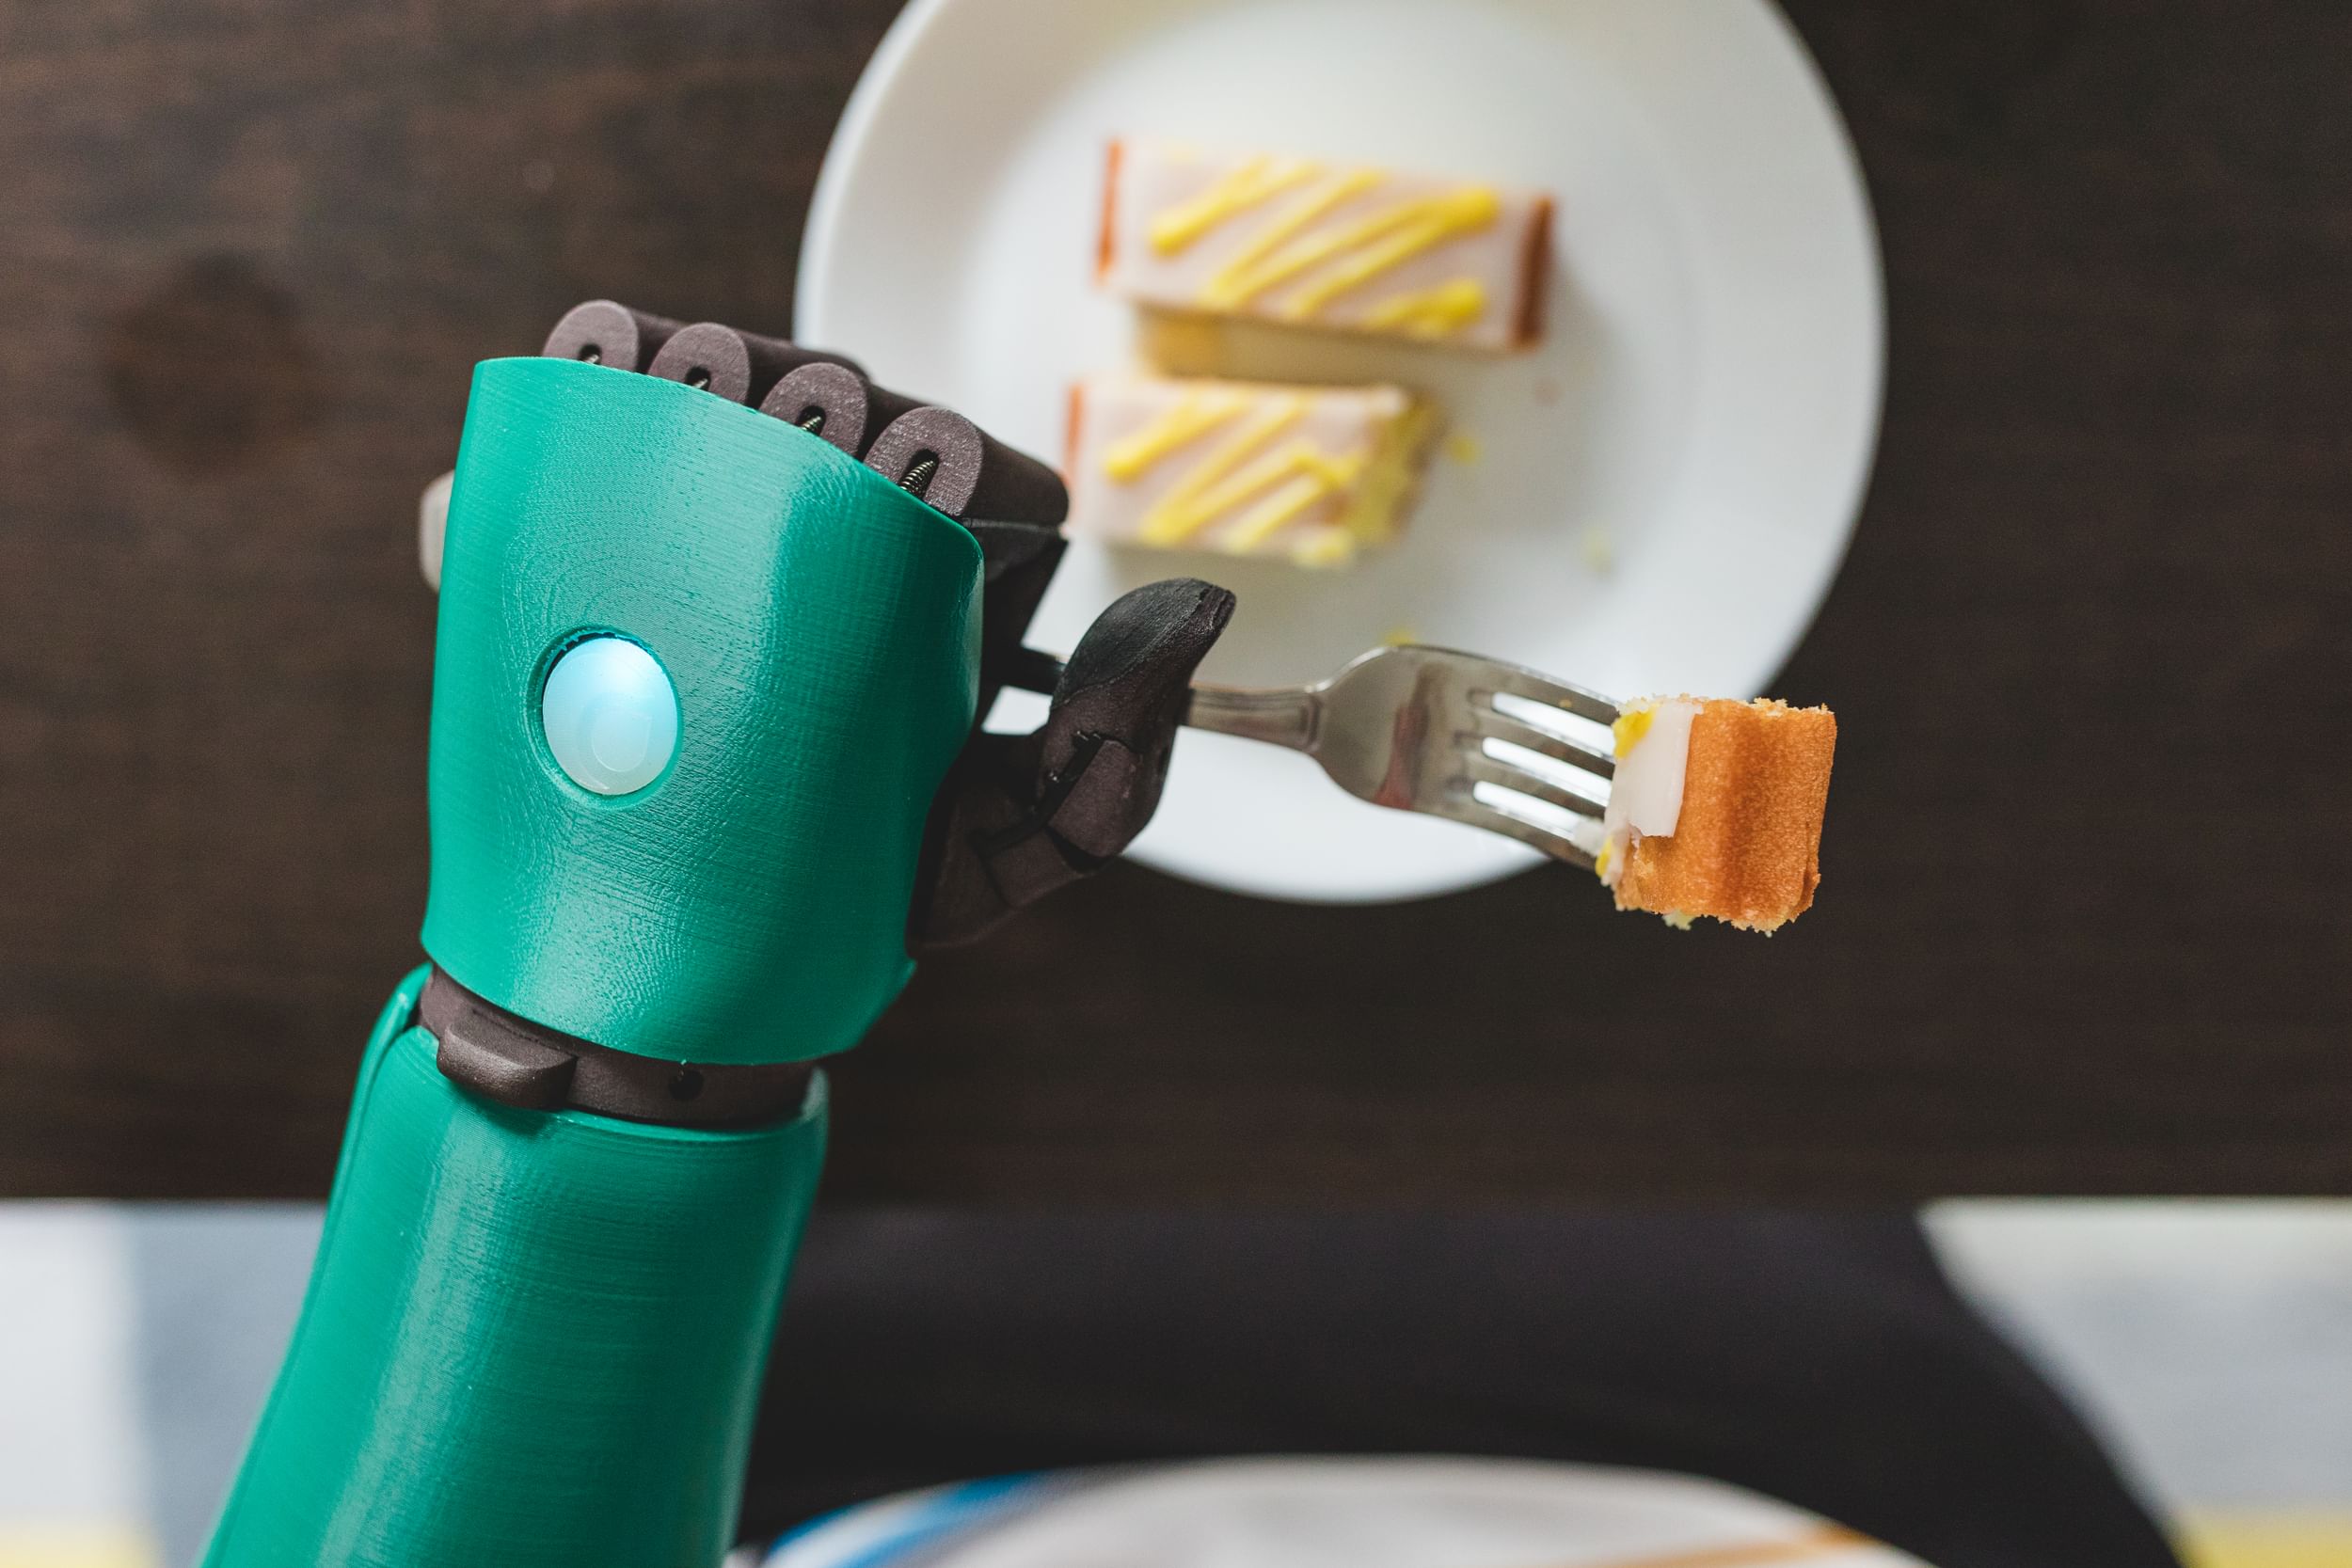 Robot arm eating cake